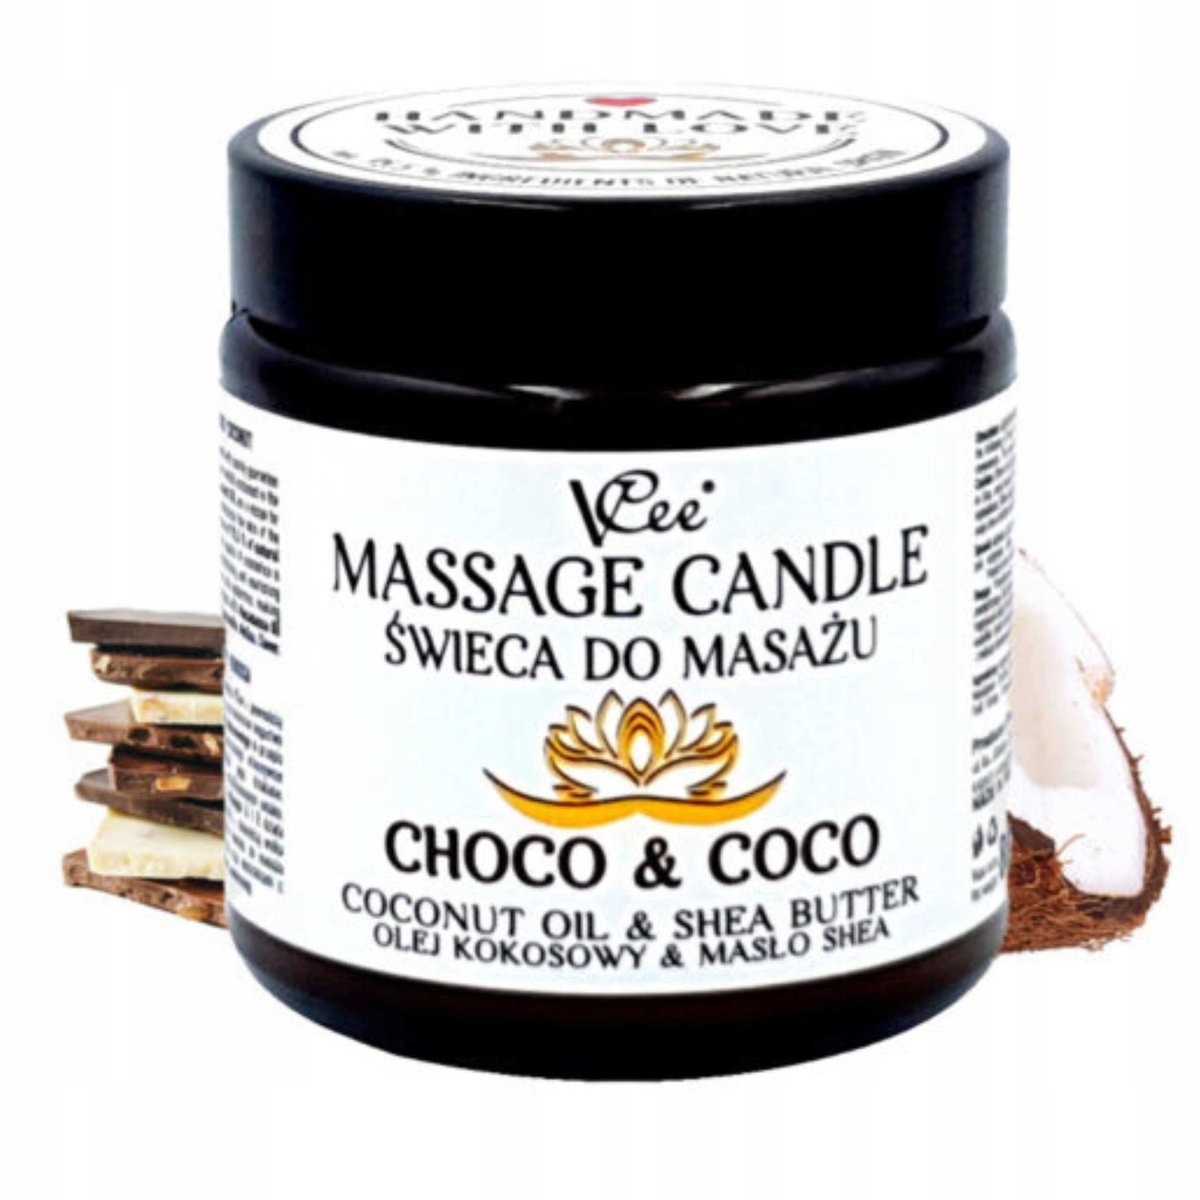 Nawilżająca świeca do masażu VCee 80 g - różne zapachy - Choco & Coco